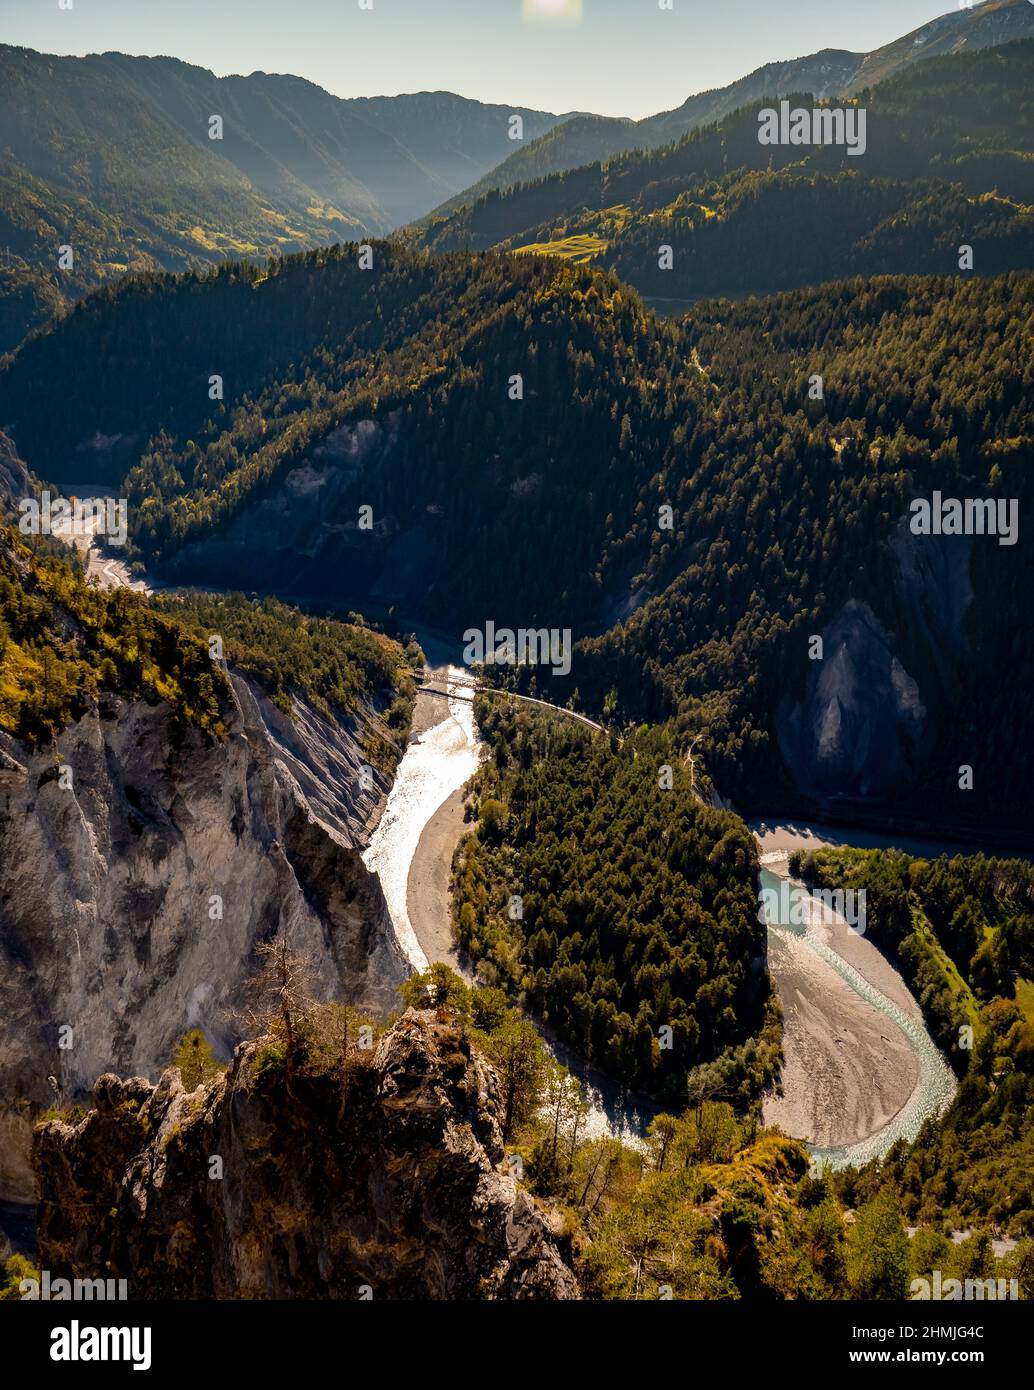 La principale curva del fiume nella Ruinaulta o nella gola del Reno in Svizzera Foto Stock